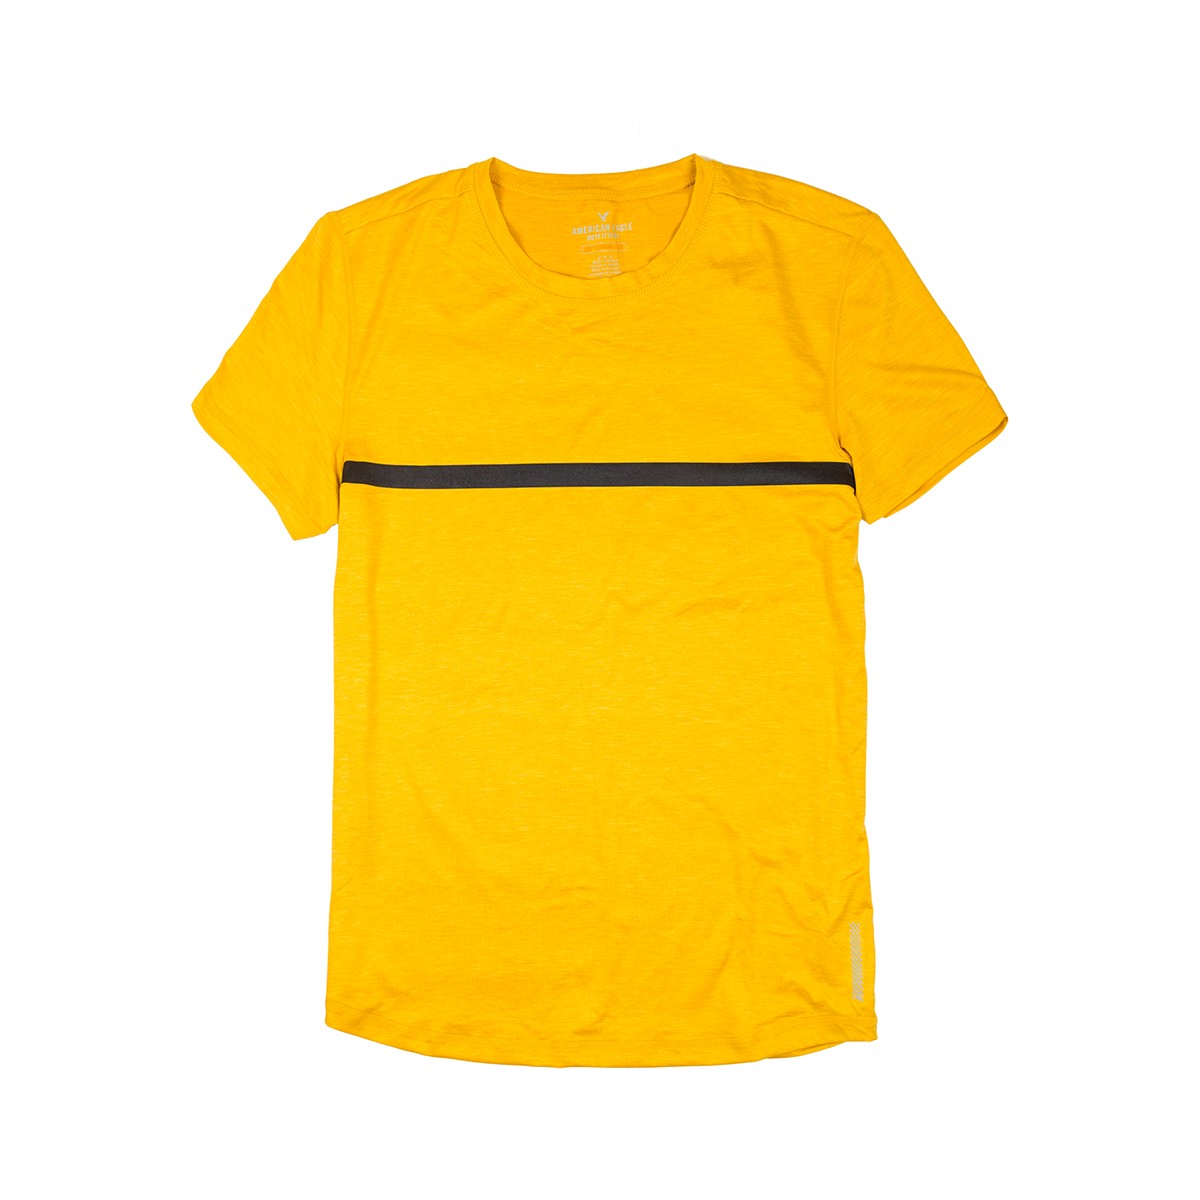 Желтая футболка - мужская футболка American Eagle, M, M